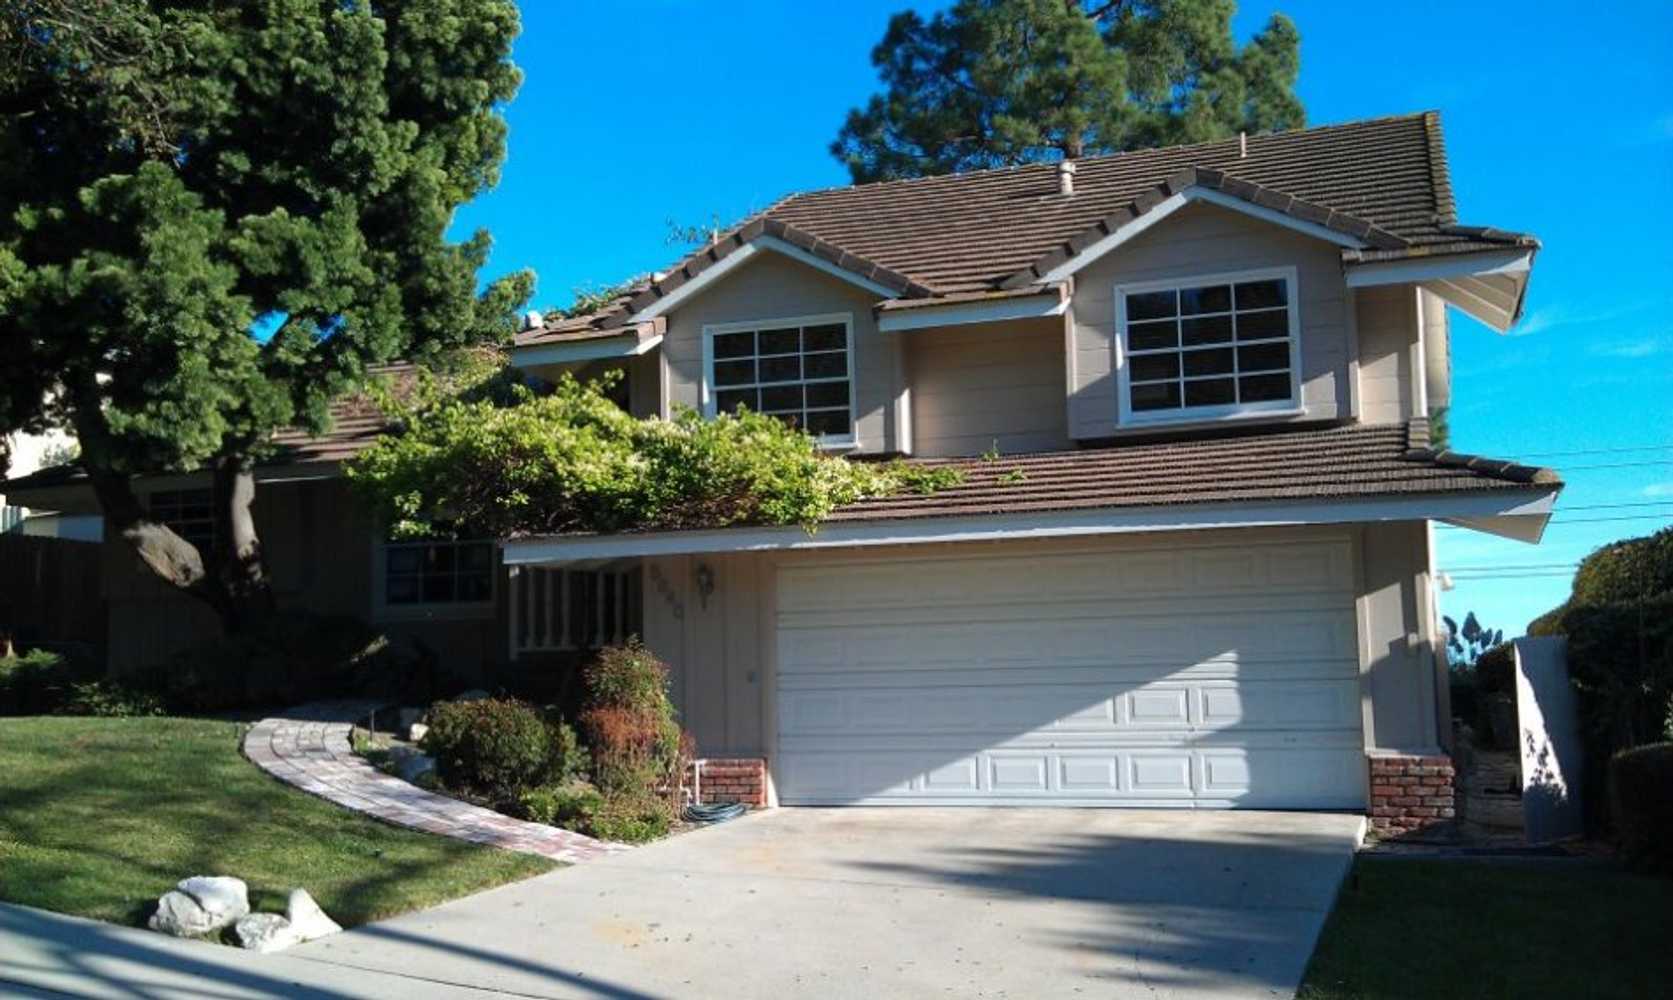 Rancho Palos Verdes - Split-level home exterior